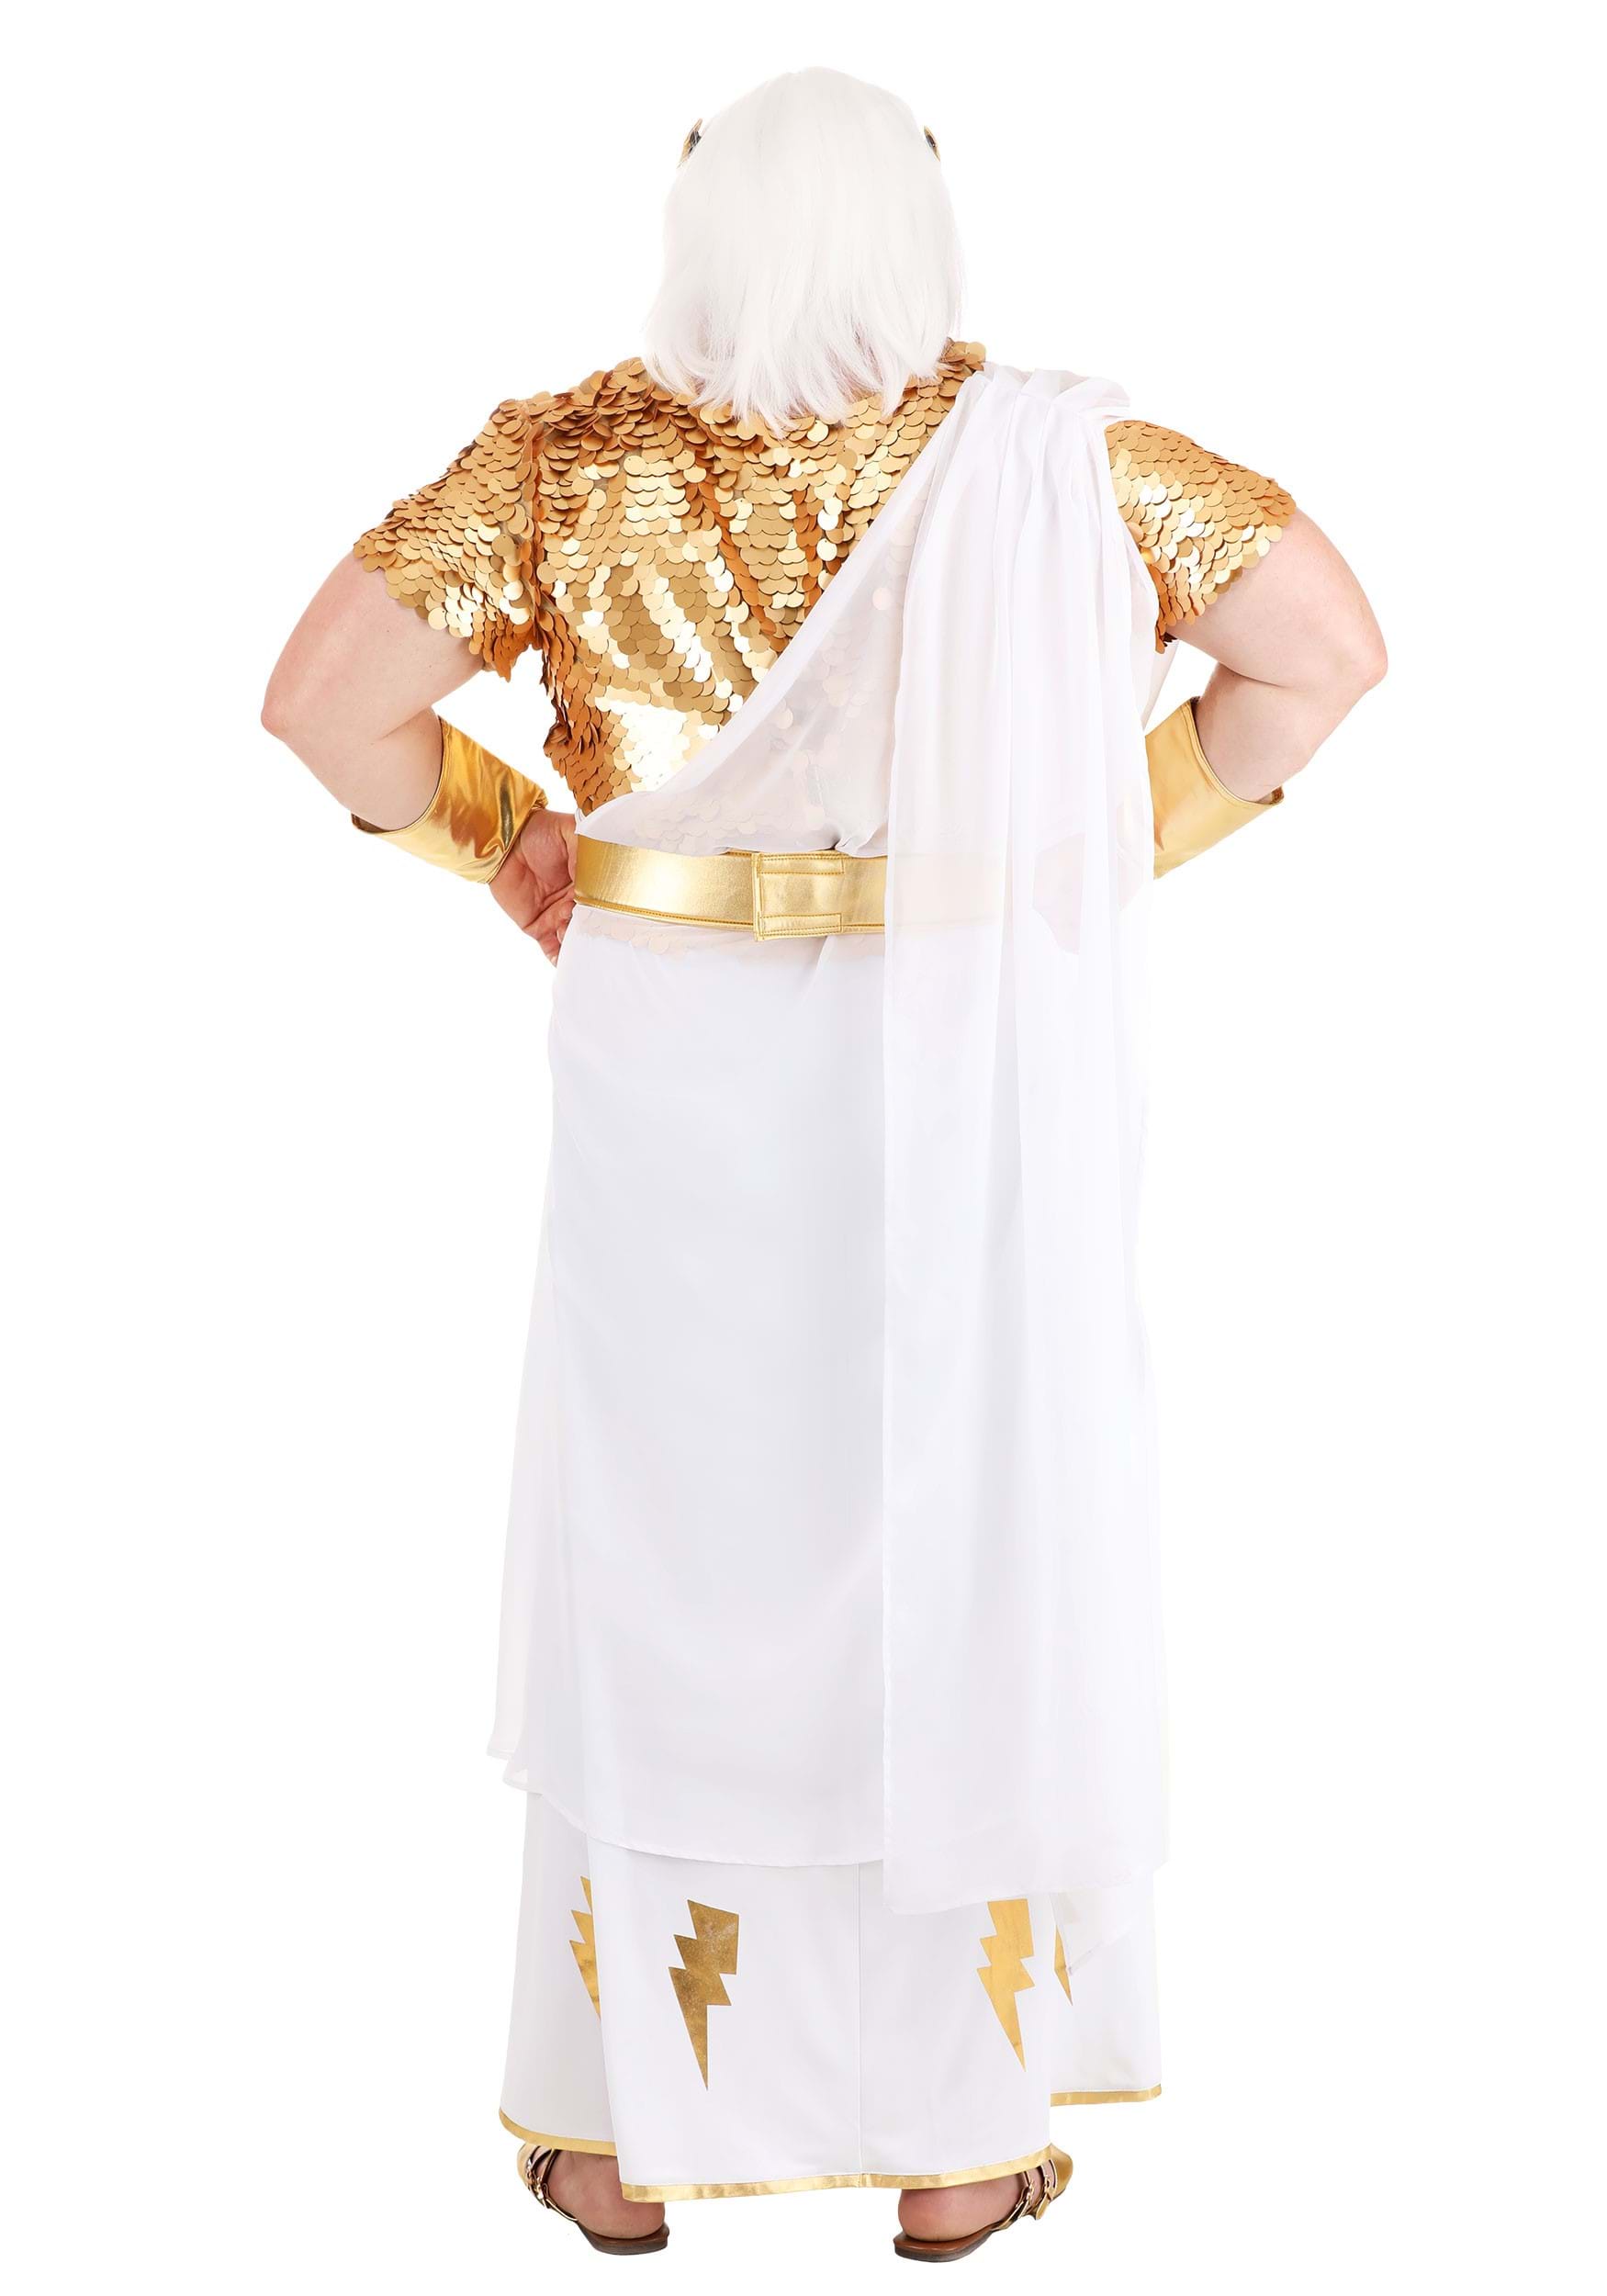 Men's Plus Size Deluxe Zeus Fancy Dress Costume